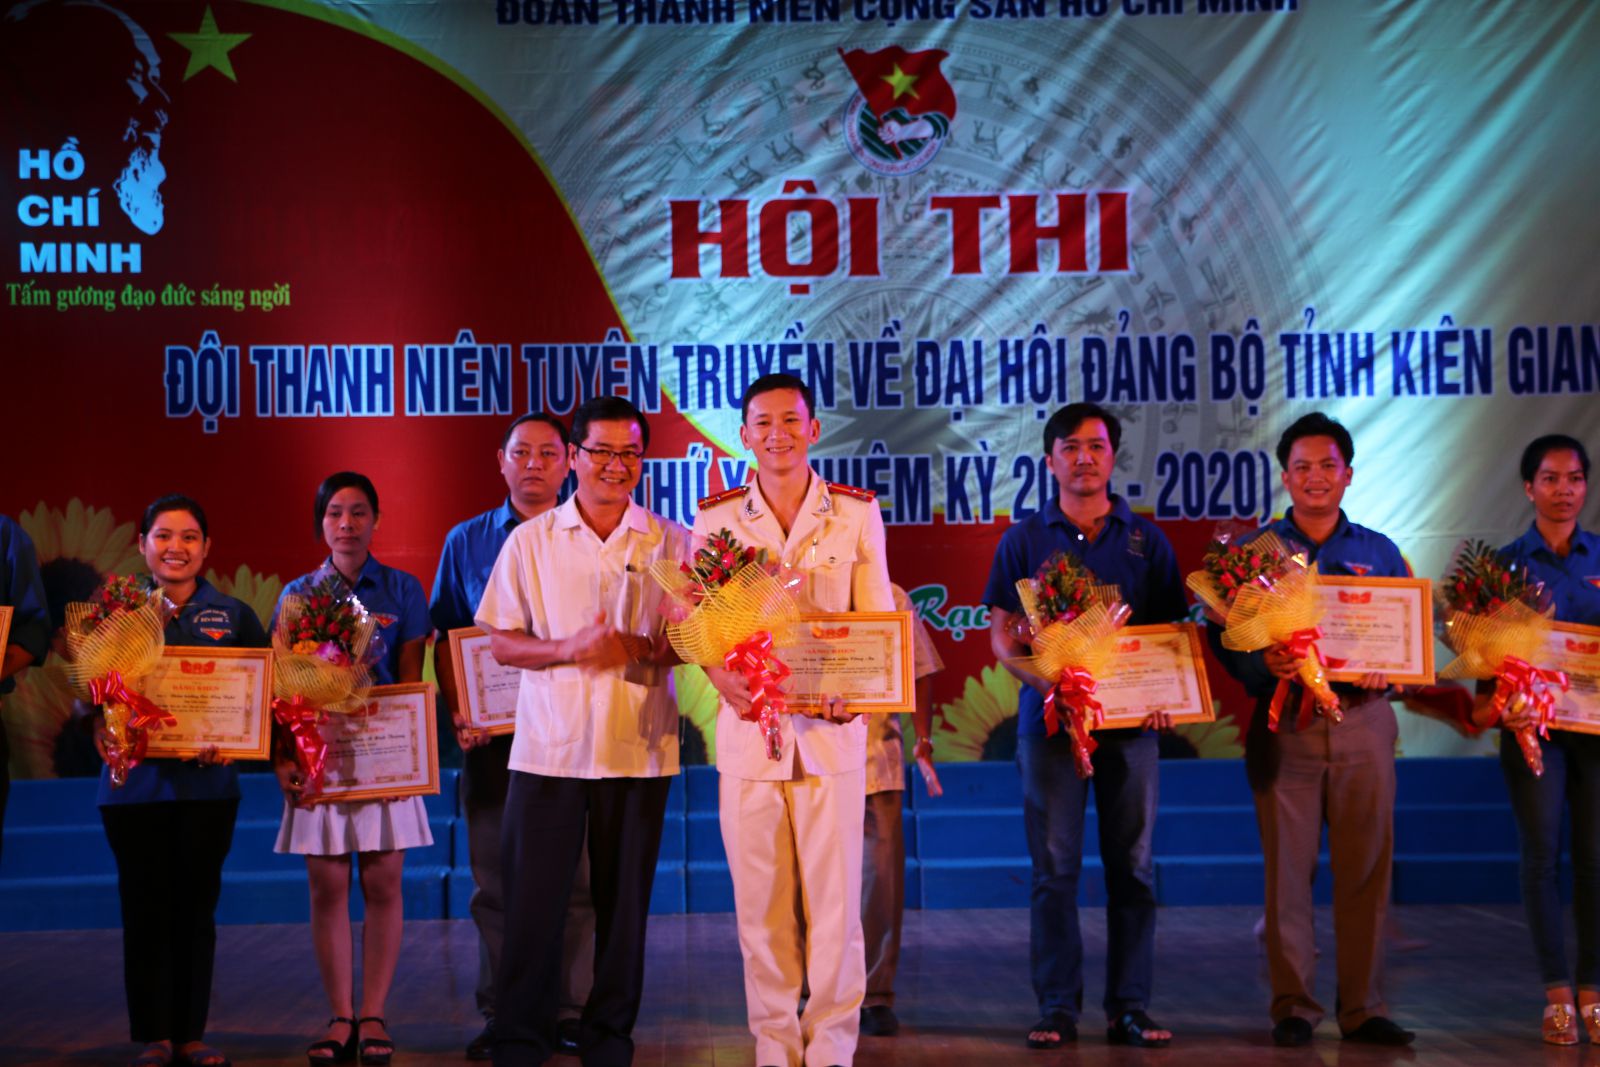 Đồng chí Phạm Công Khâm - Ủy viên Ban thường vụ Tỉnh ủy, Trưởng Ban Tuyên giáo Tỉnh ủy, trao giải Nhất cho đoan vị Đoàn thanh niên Công an tỉnh.